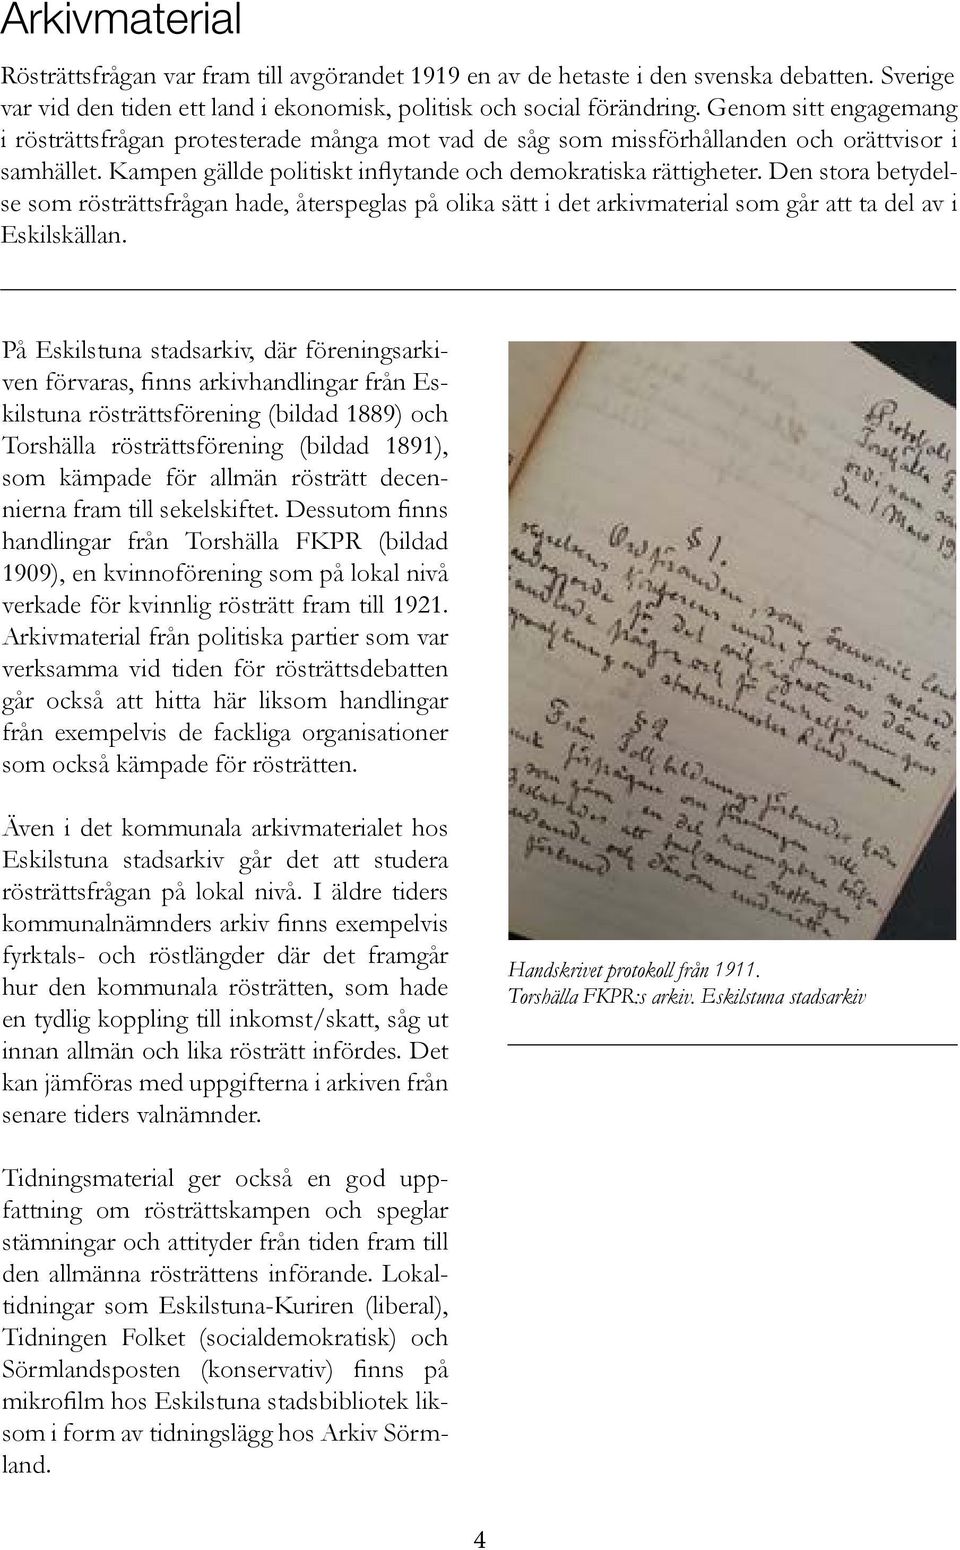 Den stora betydelse som rösträttsfrågan hade, återspeglas på olika sätt i det arkivmaterial som går att ta del av i Eskilskällan.